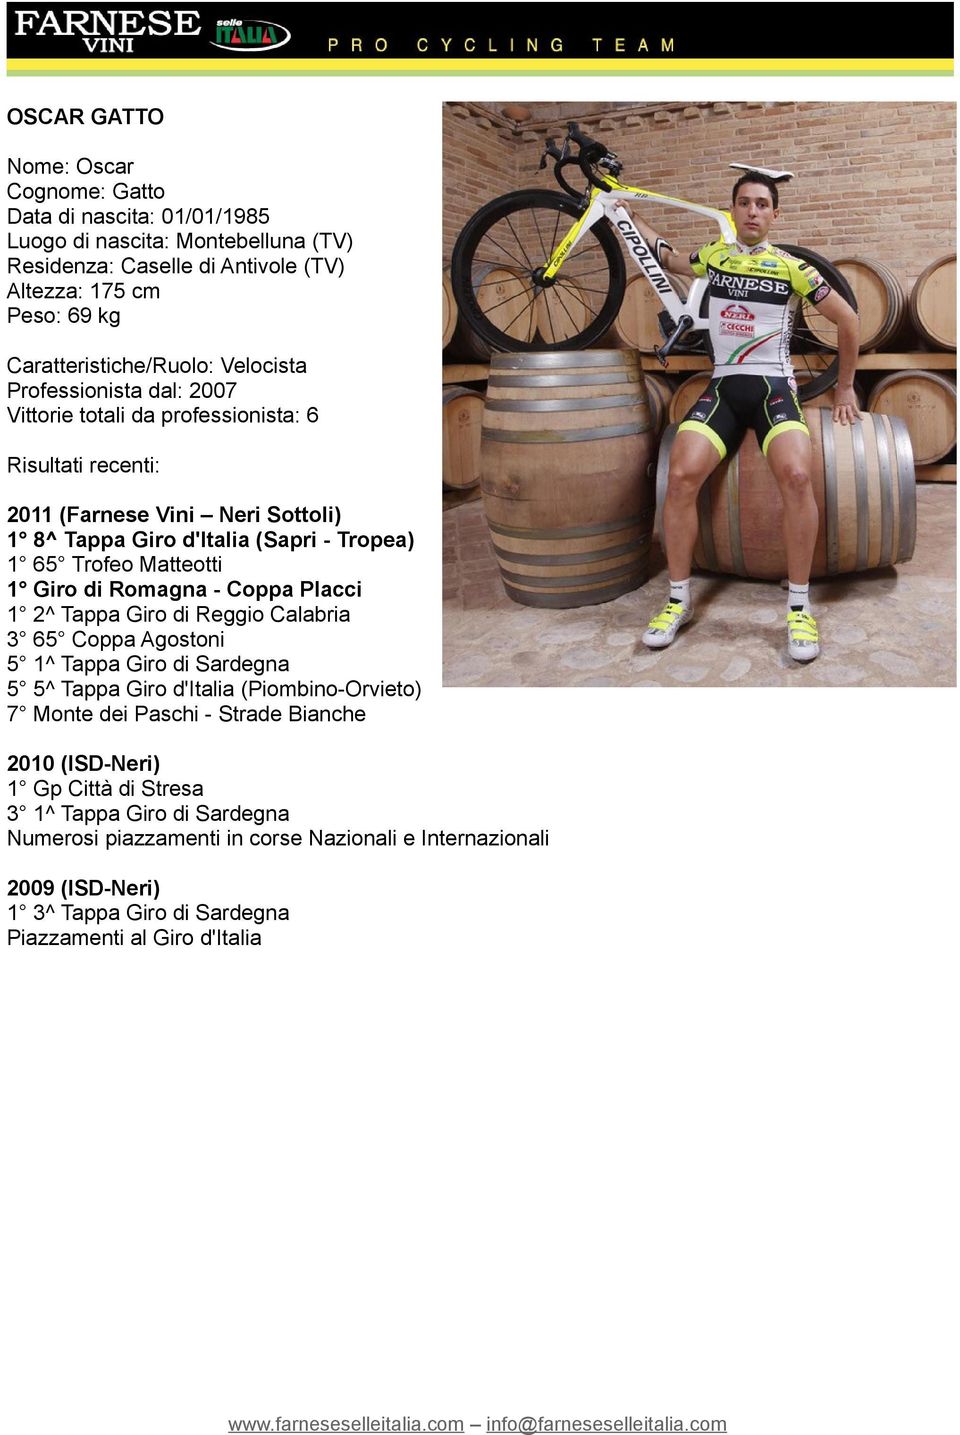 Coppa Placci 1 2^ Tappa Giro di Reggio Calabria 3 65 Coppa Agostoni 5 1^ Tappa Giro di Sardegna 5 5^ Tappa Giro d'italia (Piombino-Orvieto) 7 Monte dei Paschi - Strade Bianche